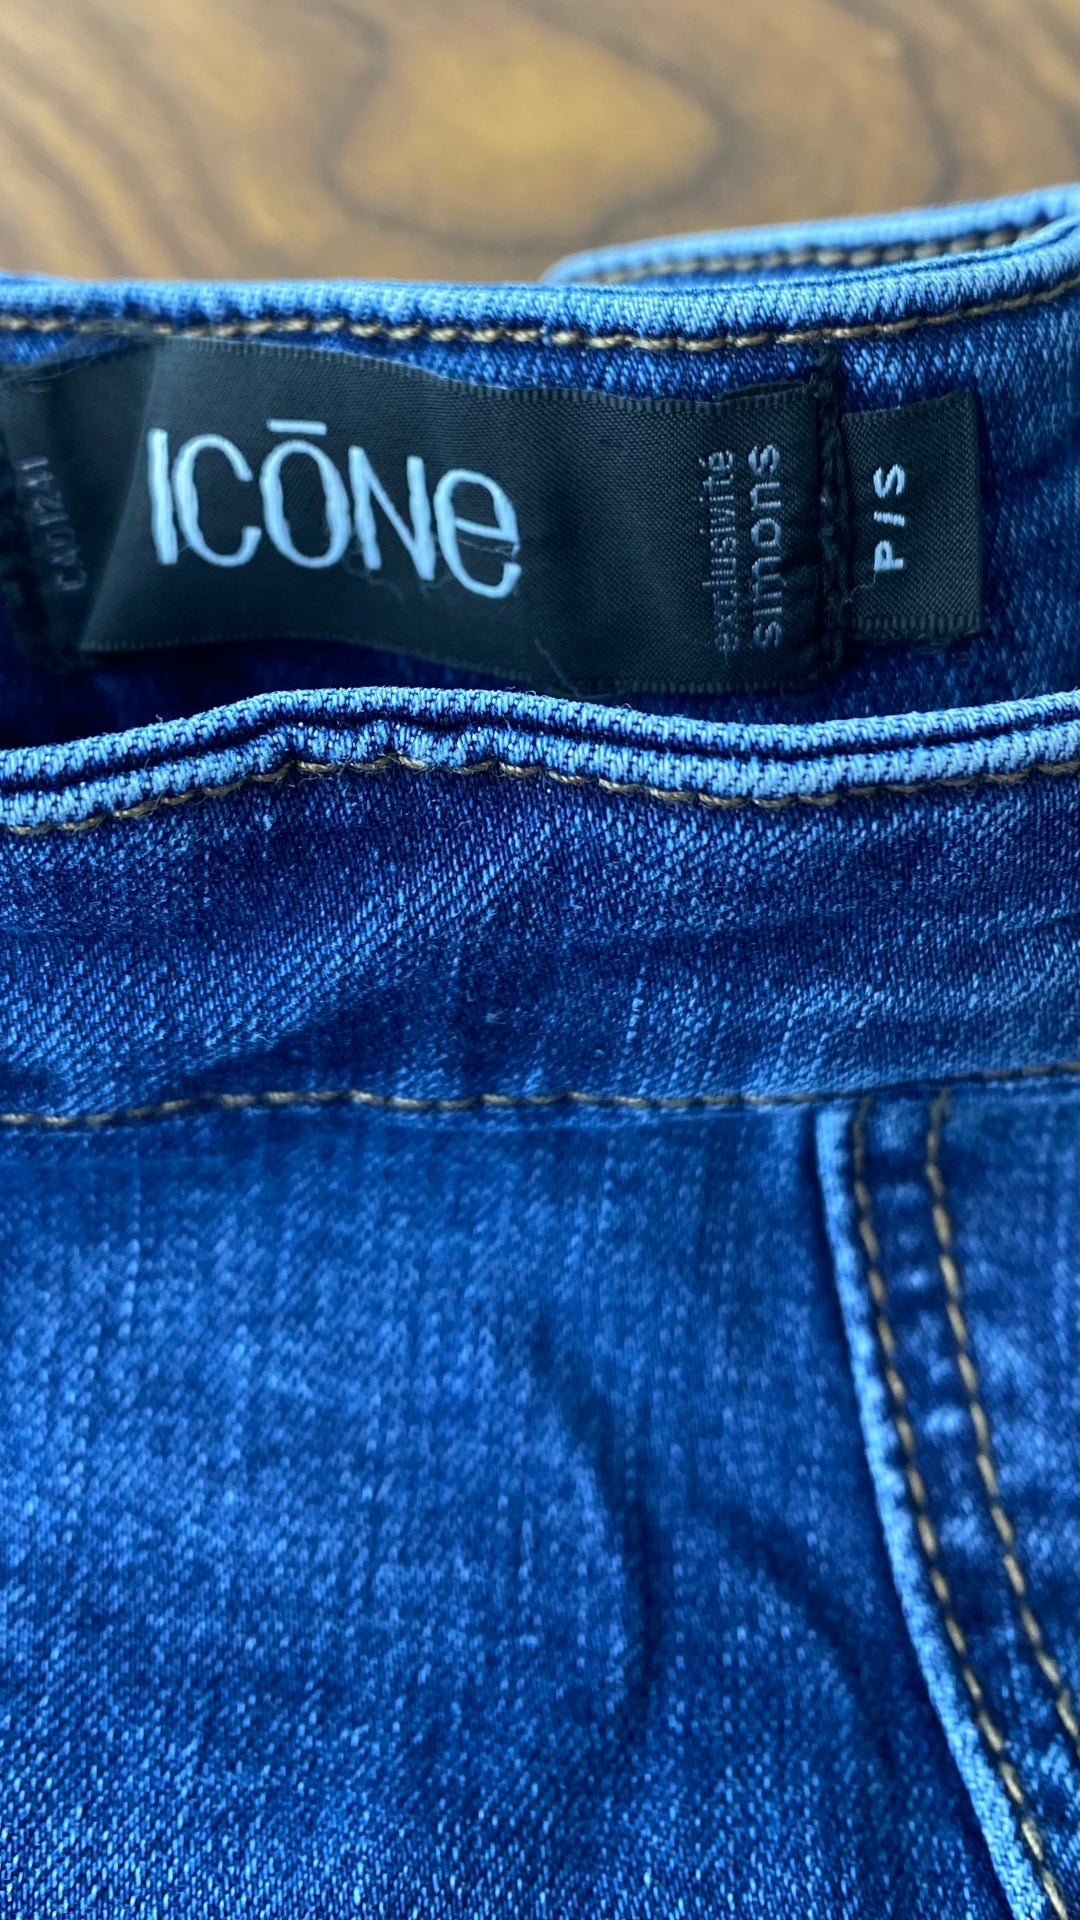 Jupe seconde main en jeans ligne A. Marque Icône par Simons, taille small. Vue de l'étiquette de marque et taille.